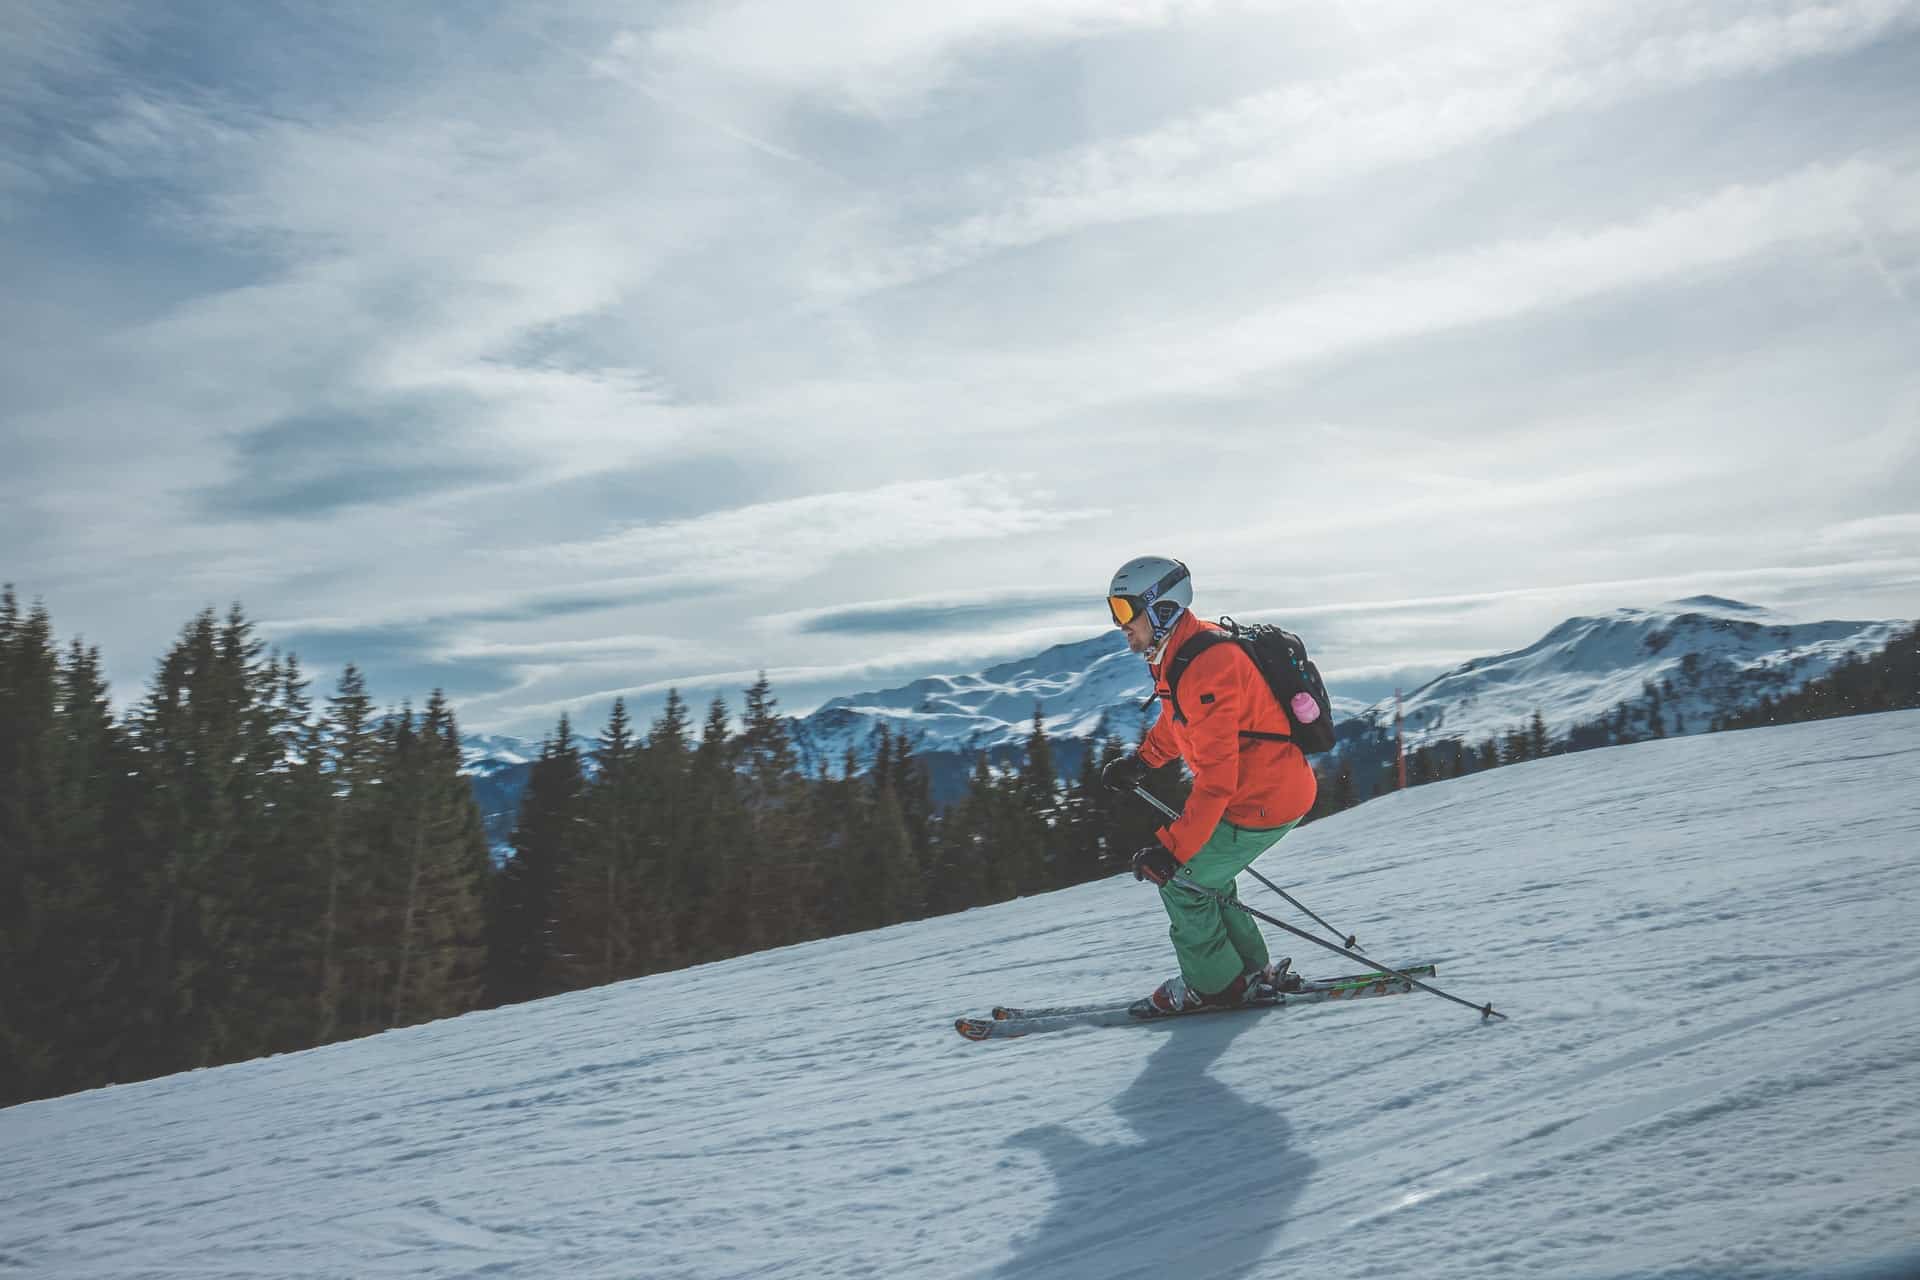 Où aller skier à moins de 2h de Lyon ?